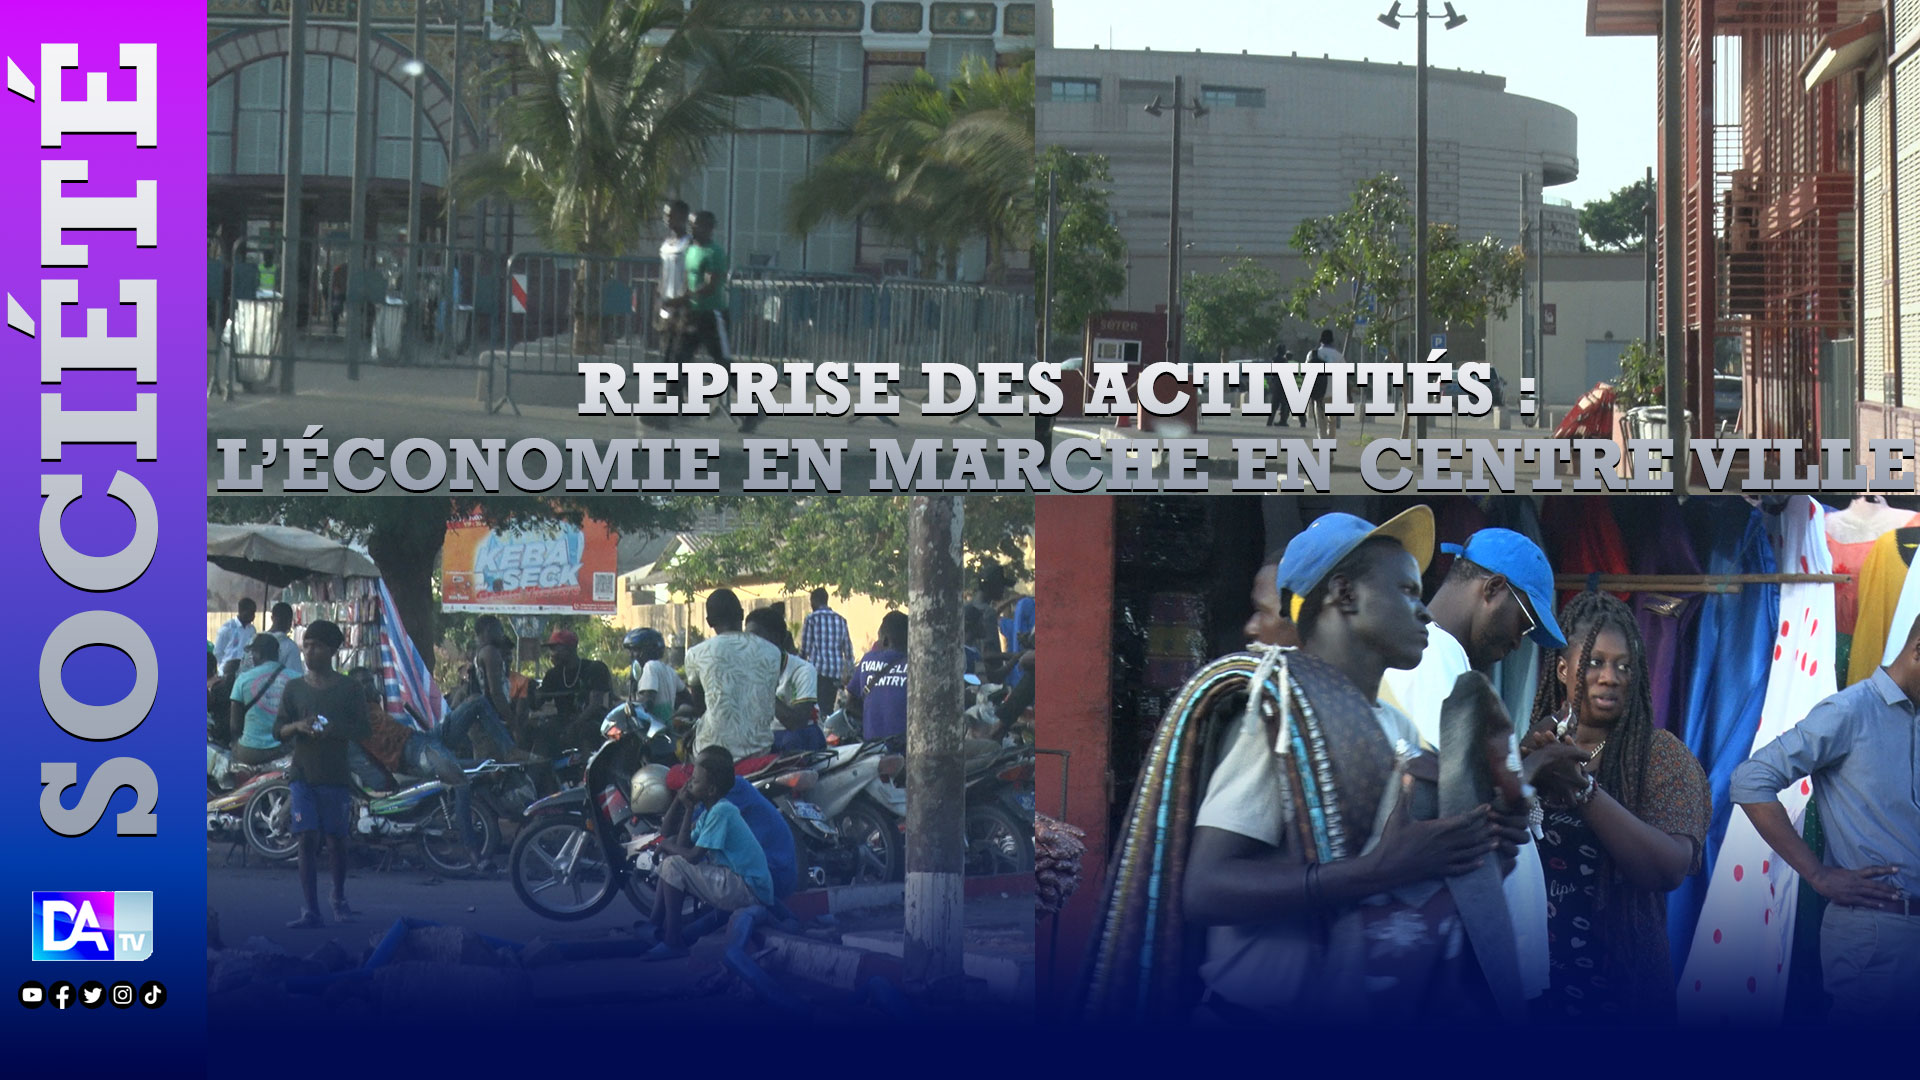 Reprise des activités : l’économie en marche en centre ville, les marchés Colobane et HLM ainsi que le TER fonctionnels...